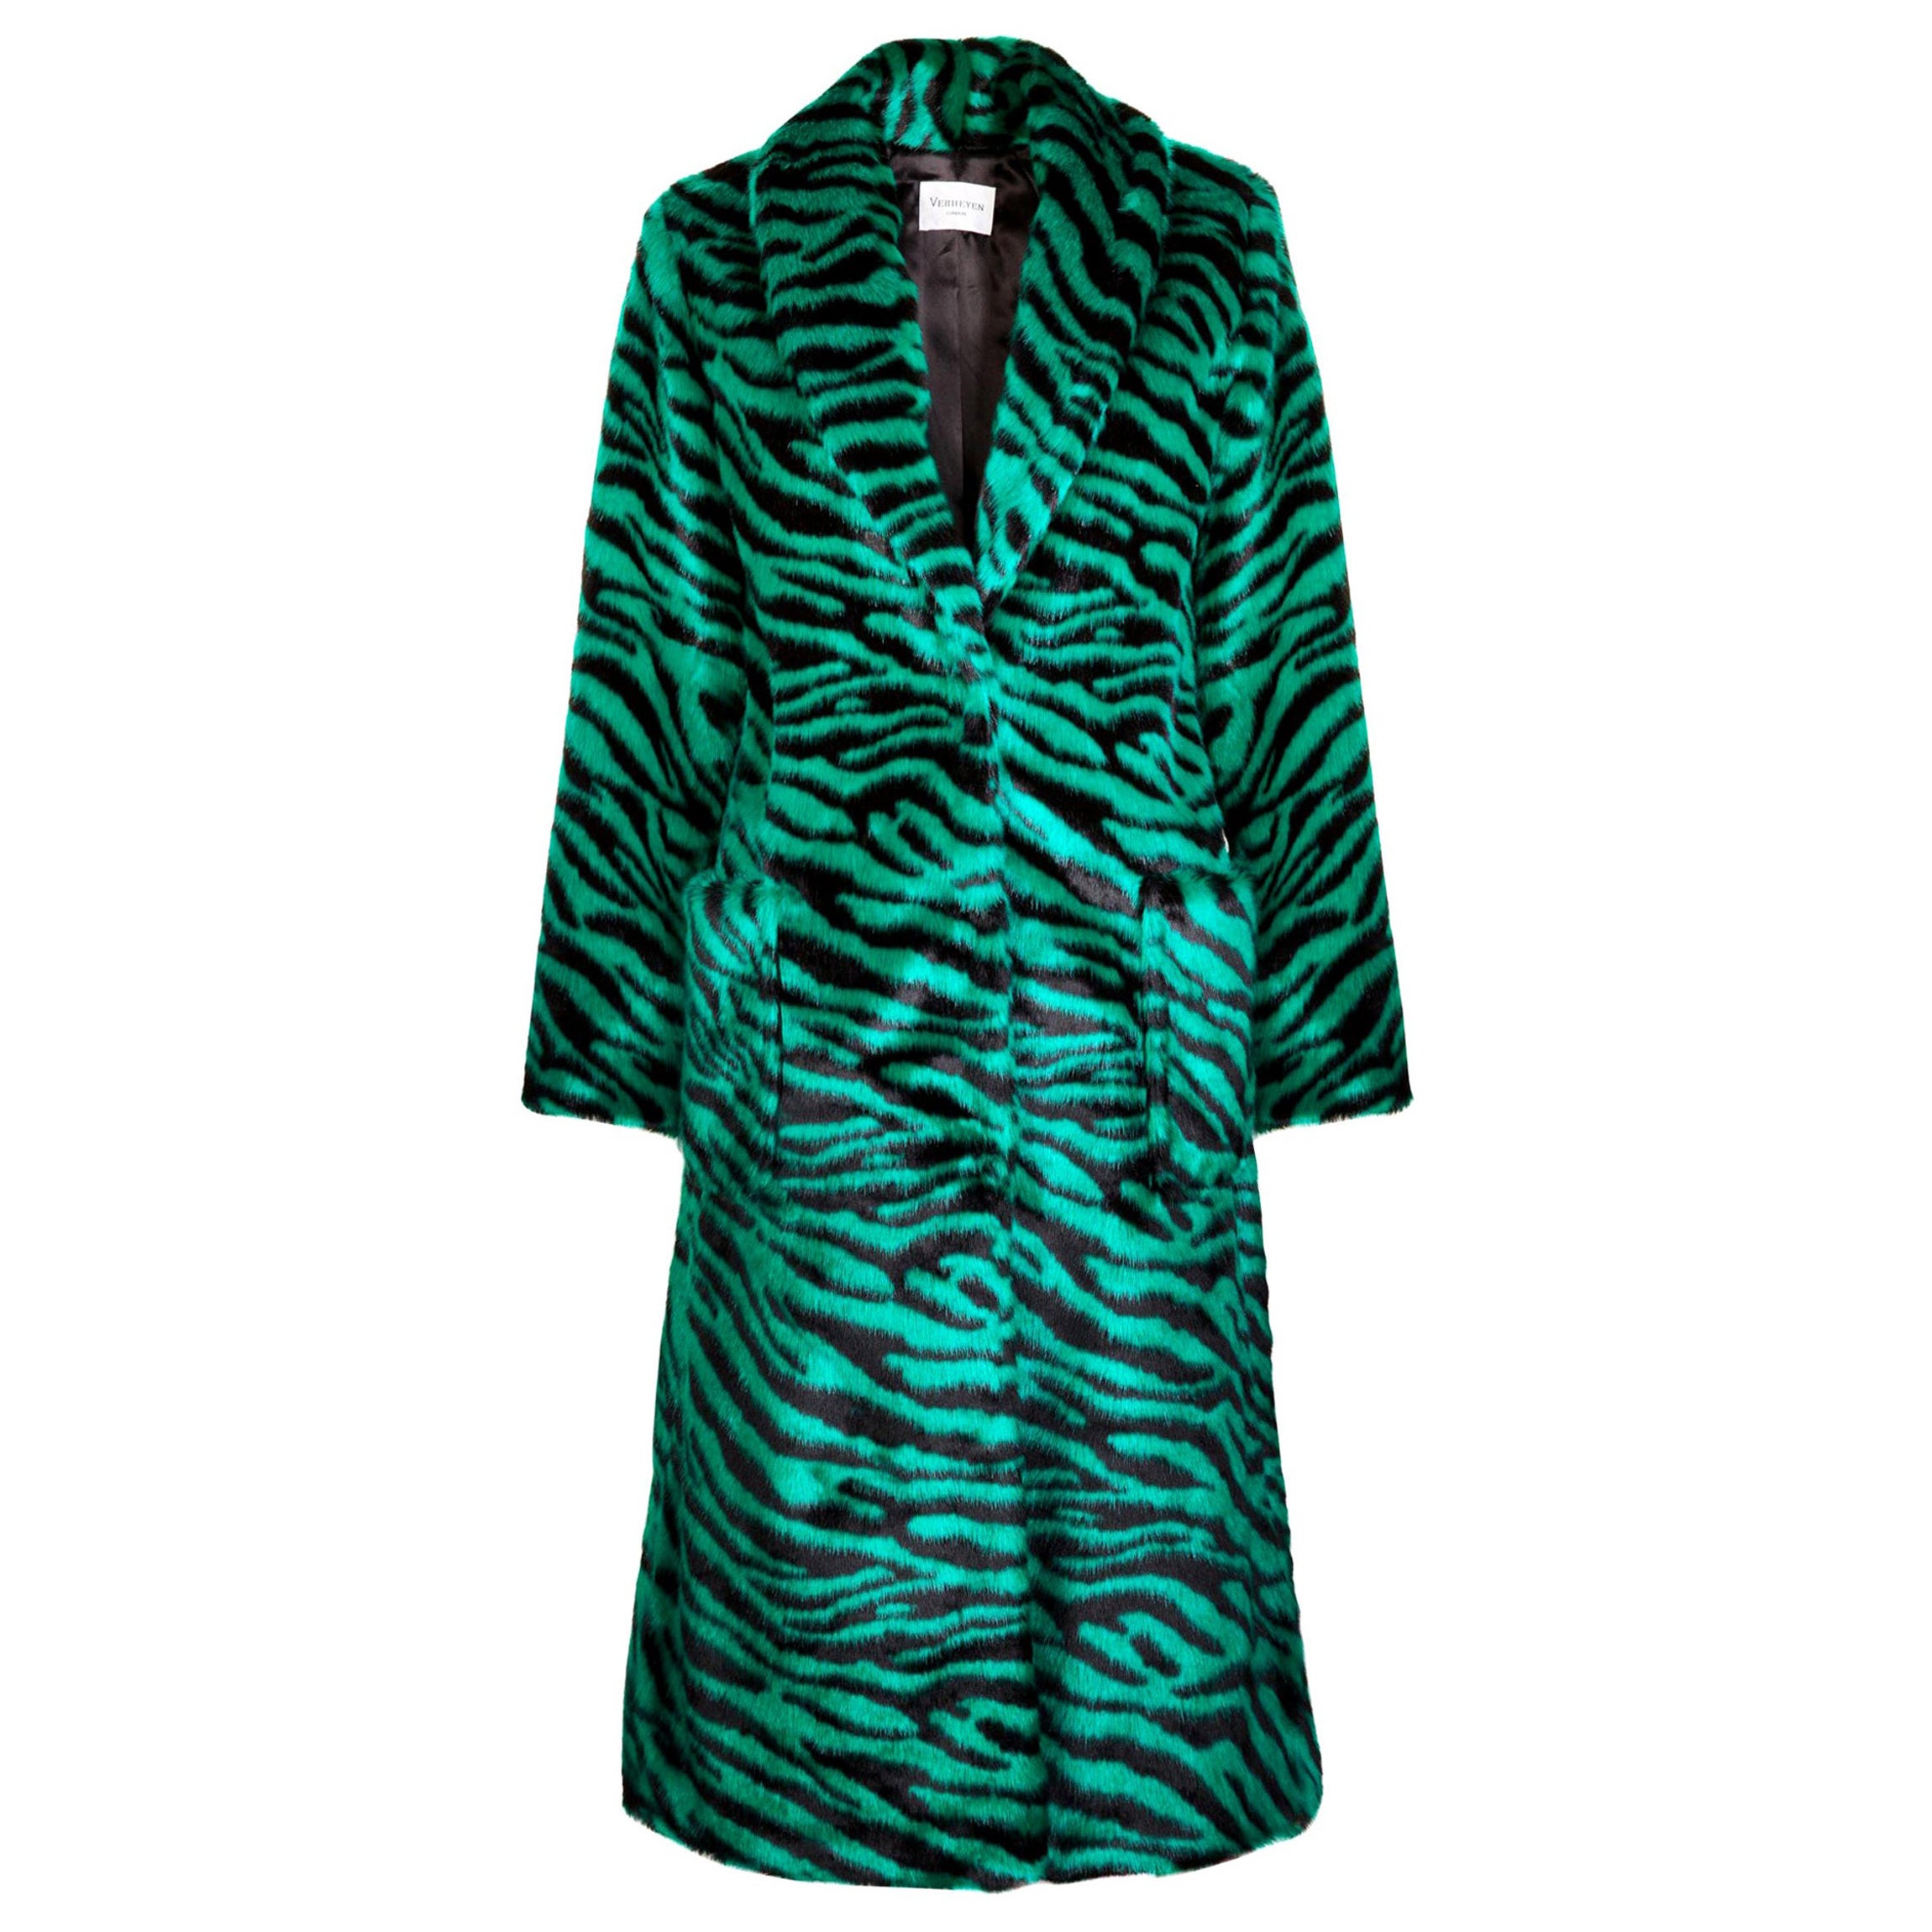 Verheyen London Esmeralda Faux Fur Coat in Emerald Green Zebra Print size uk 10 For Sale